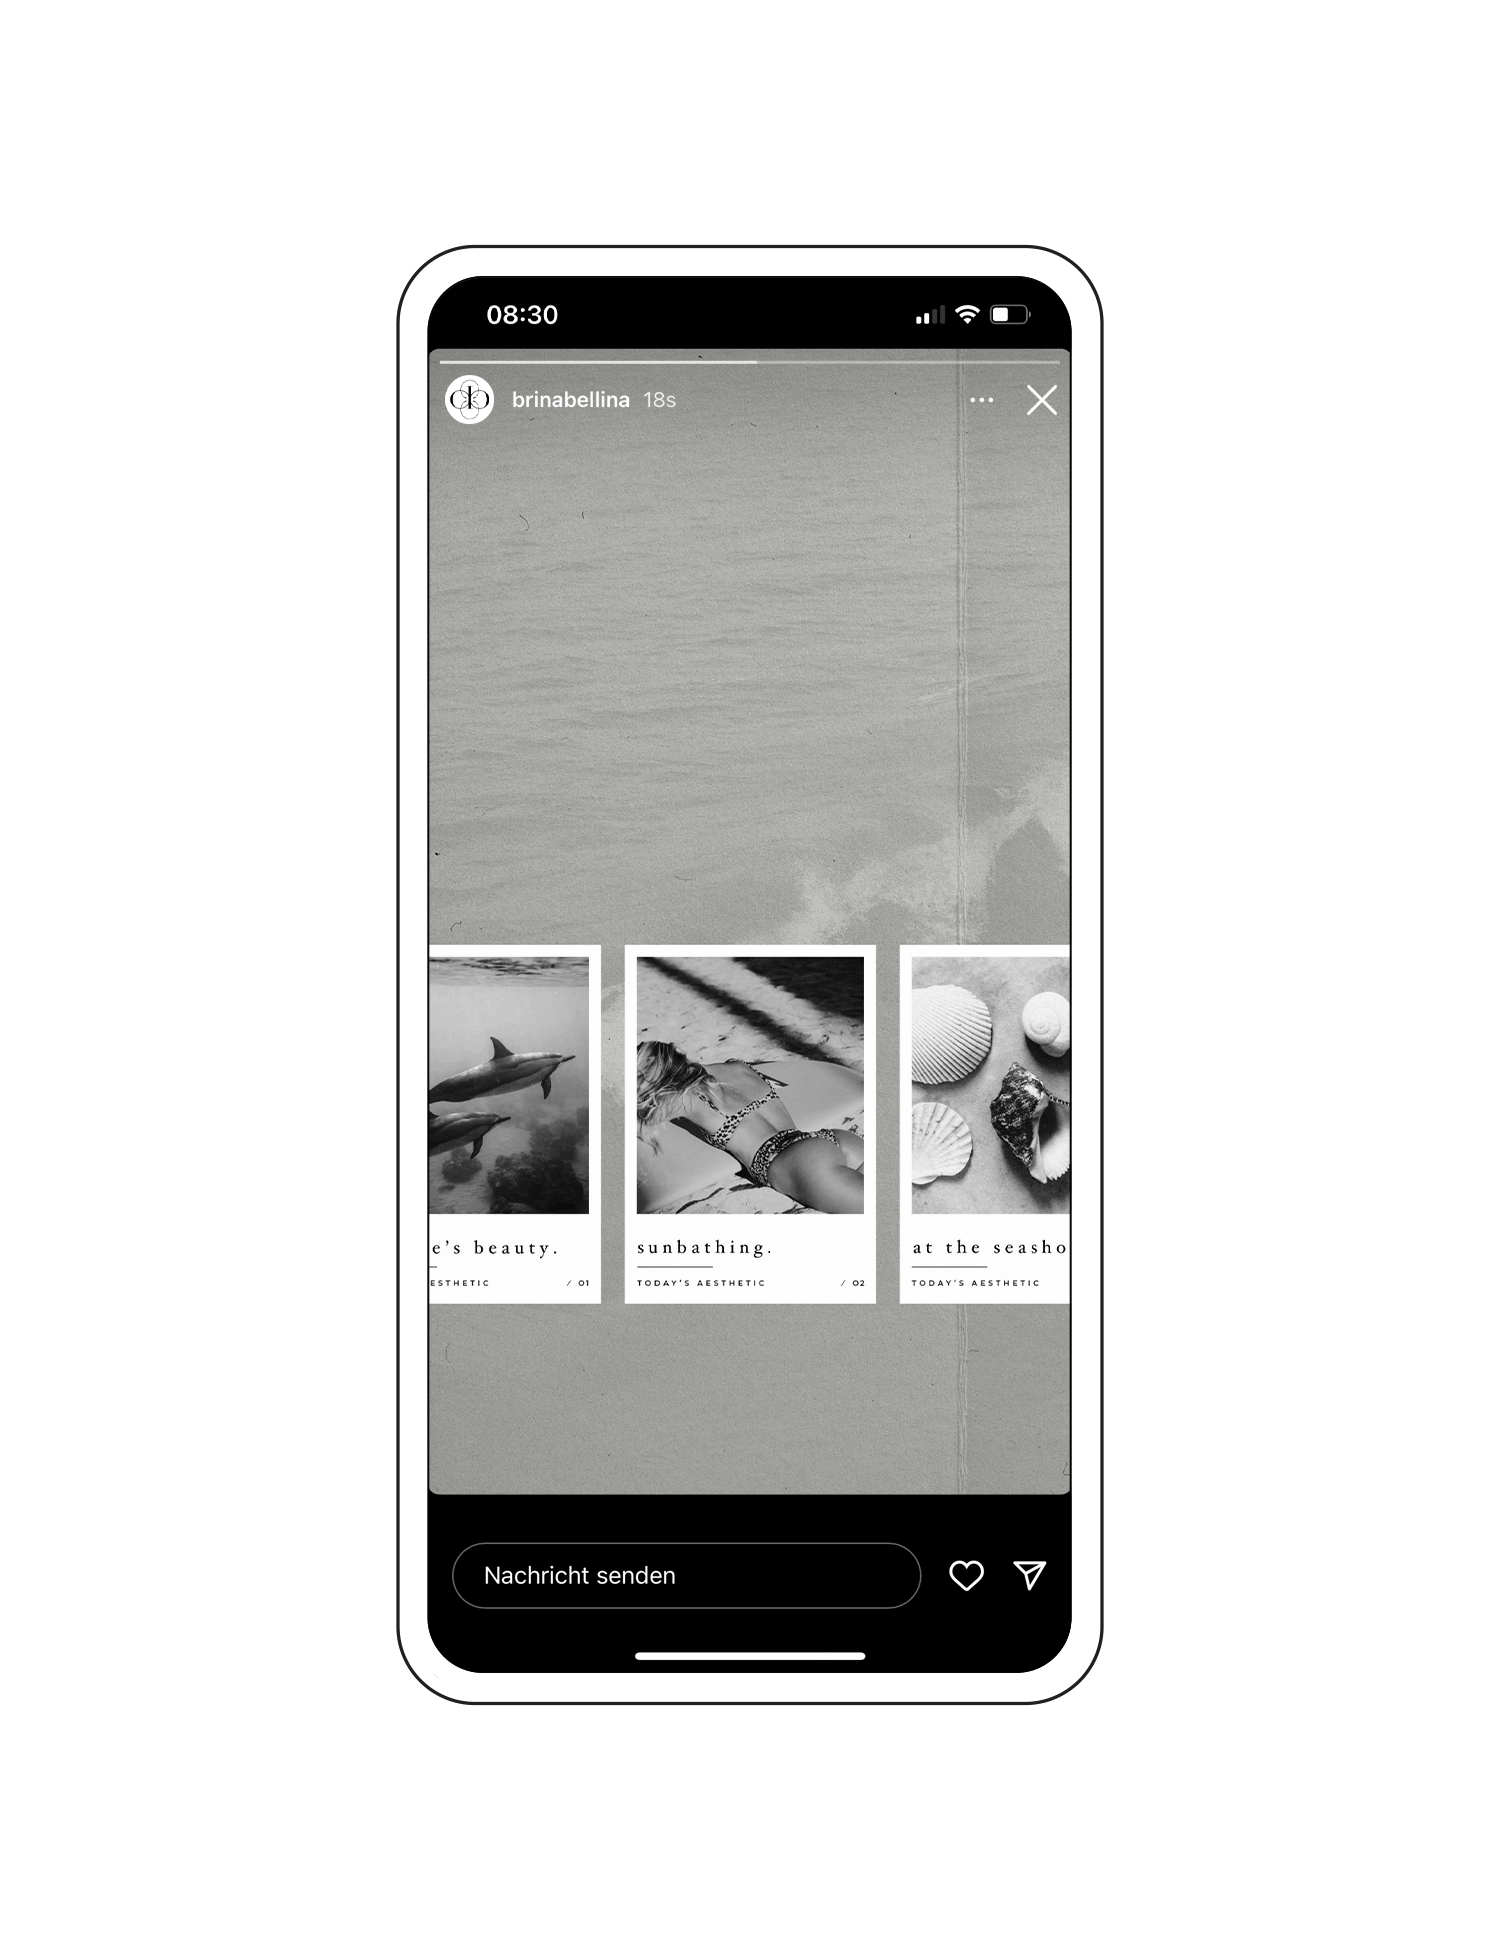 Gratis Instagram Story Template mit drei Polaroidbildern aus der 'The Seaside' Instagram Story Sticker Kollektion.